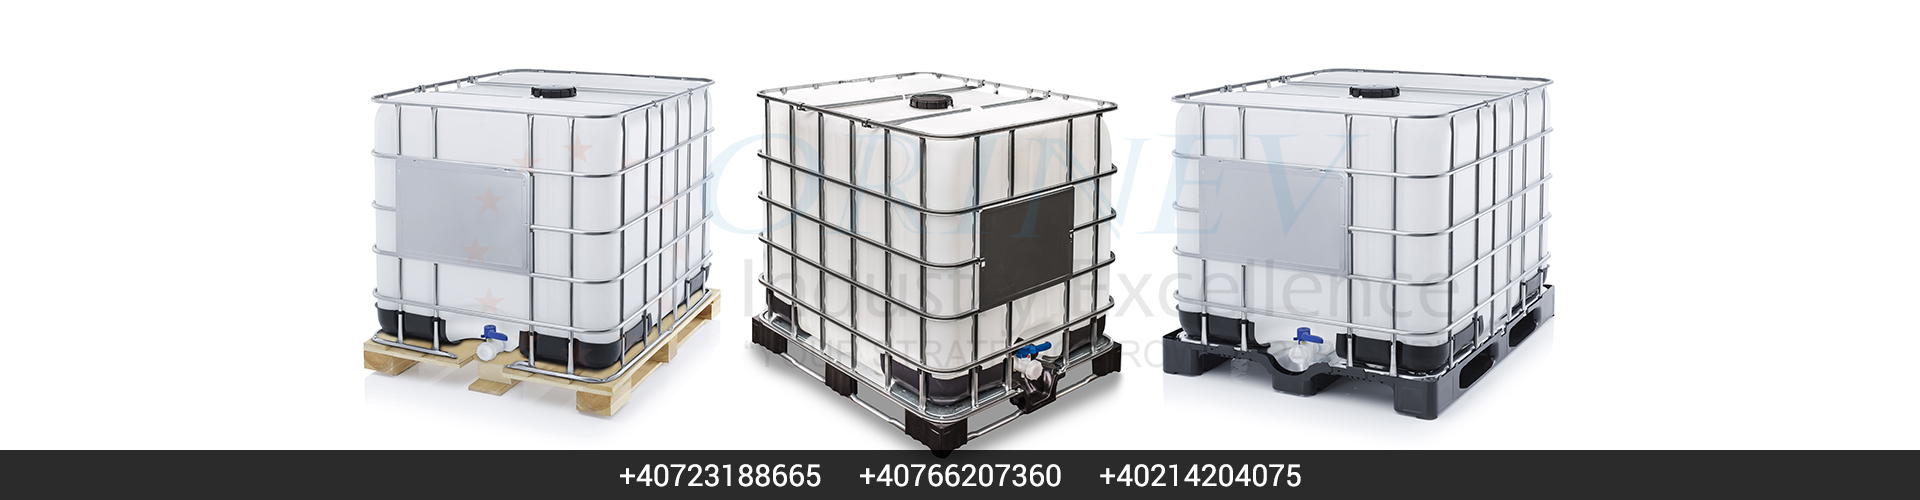 Container IBC